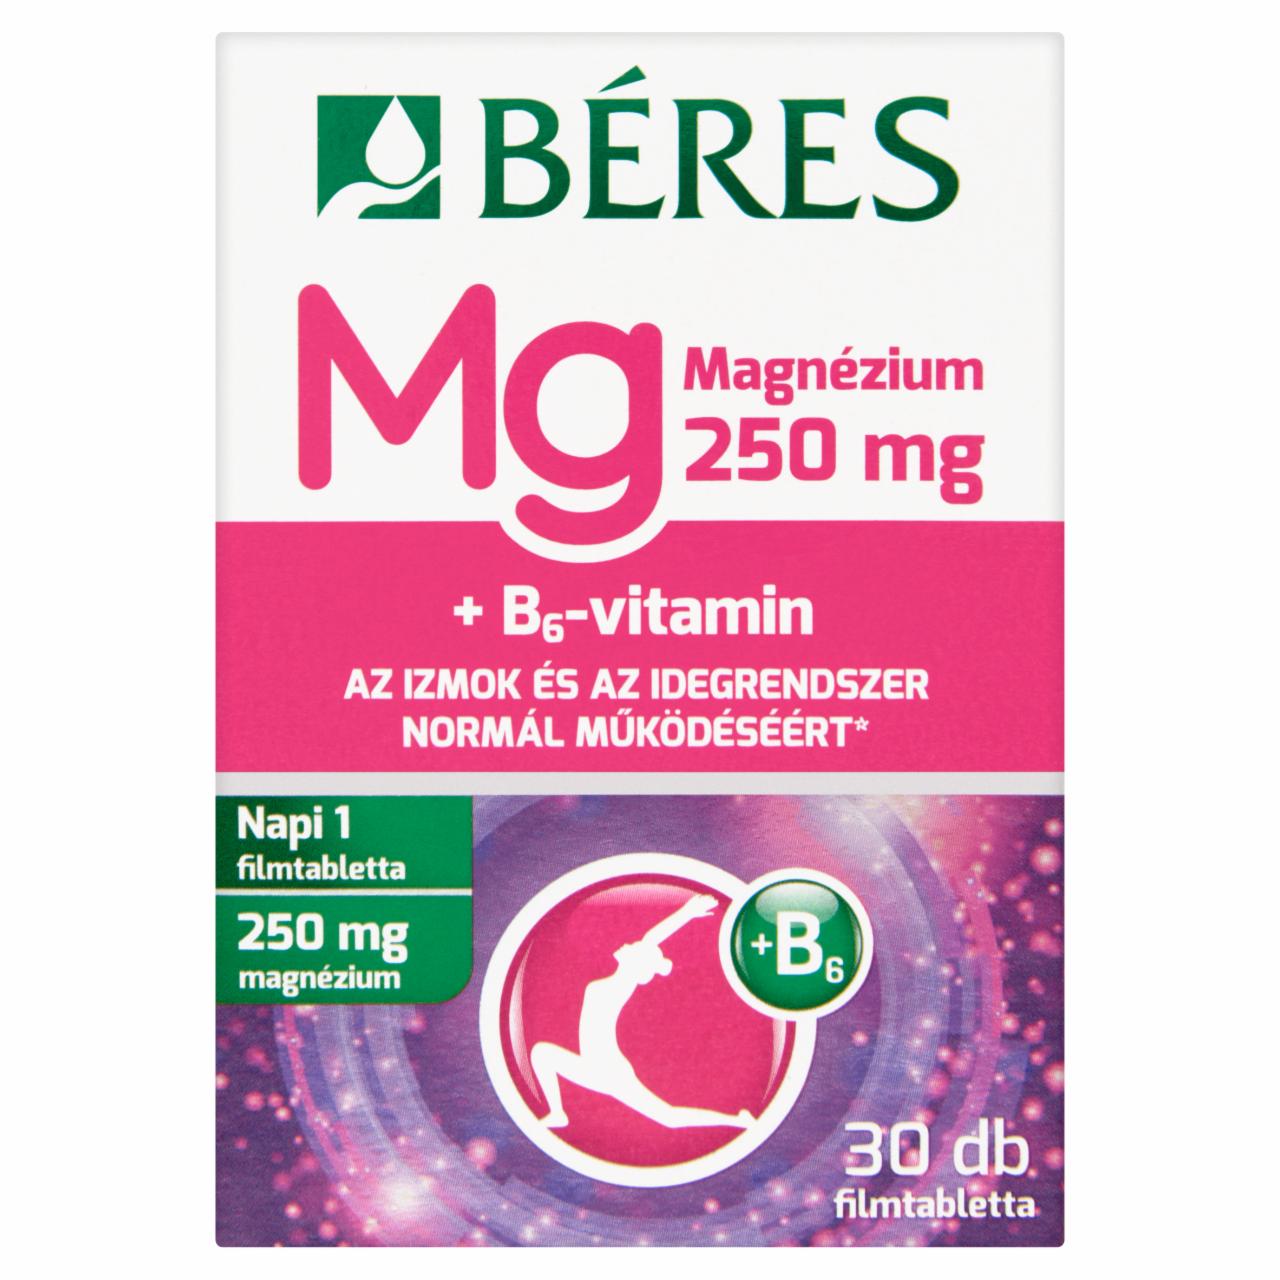 Képek - Béres Magnézium 250 mg filmtabletta 30 db 37,5 g